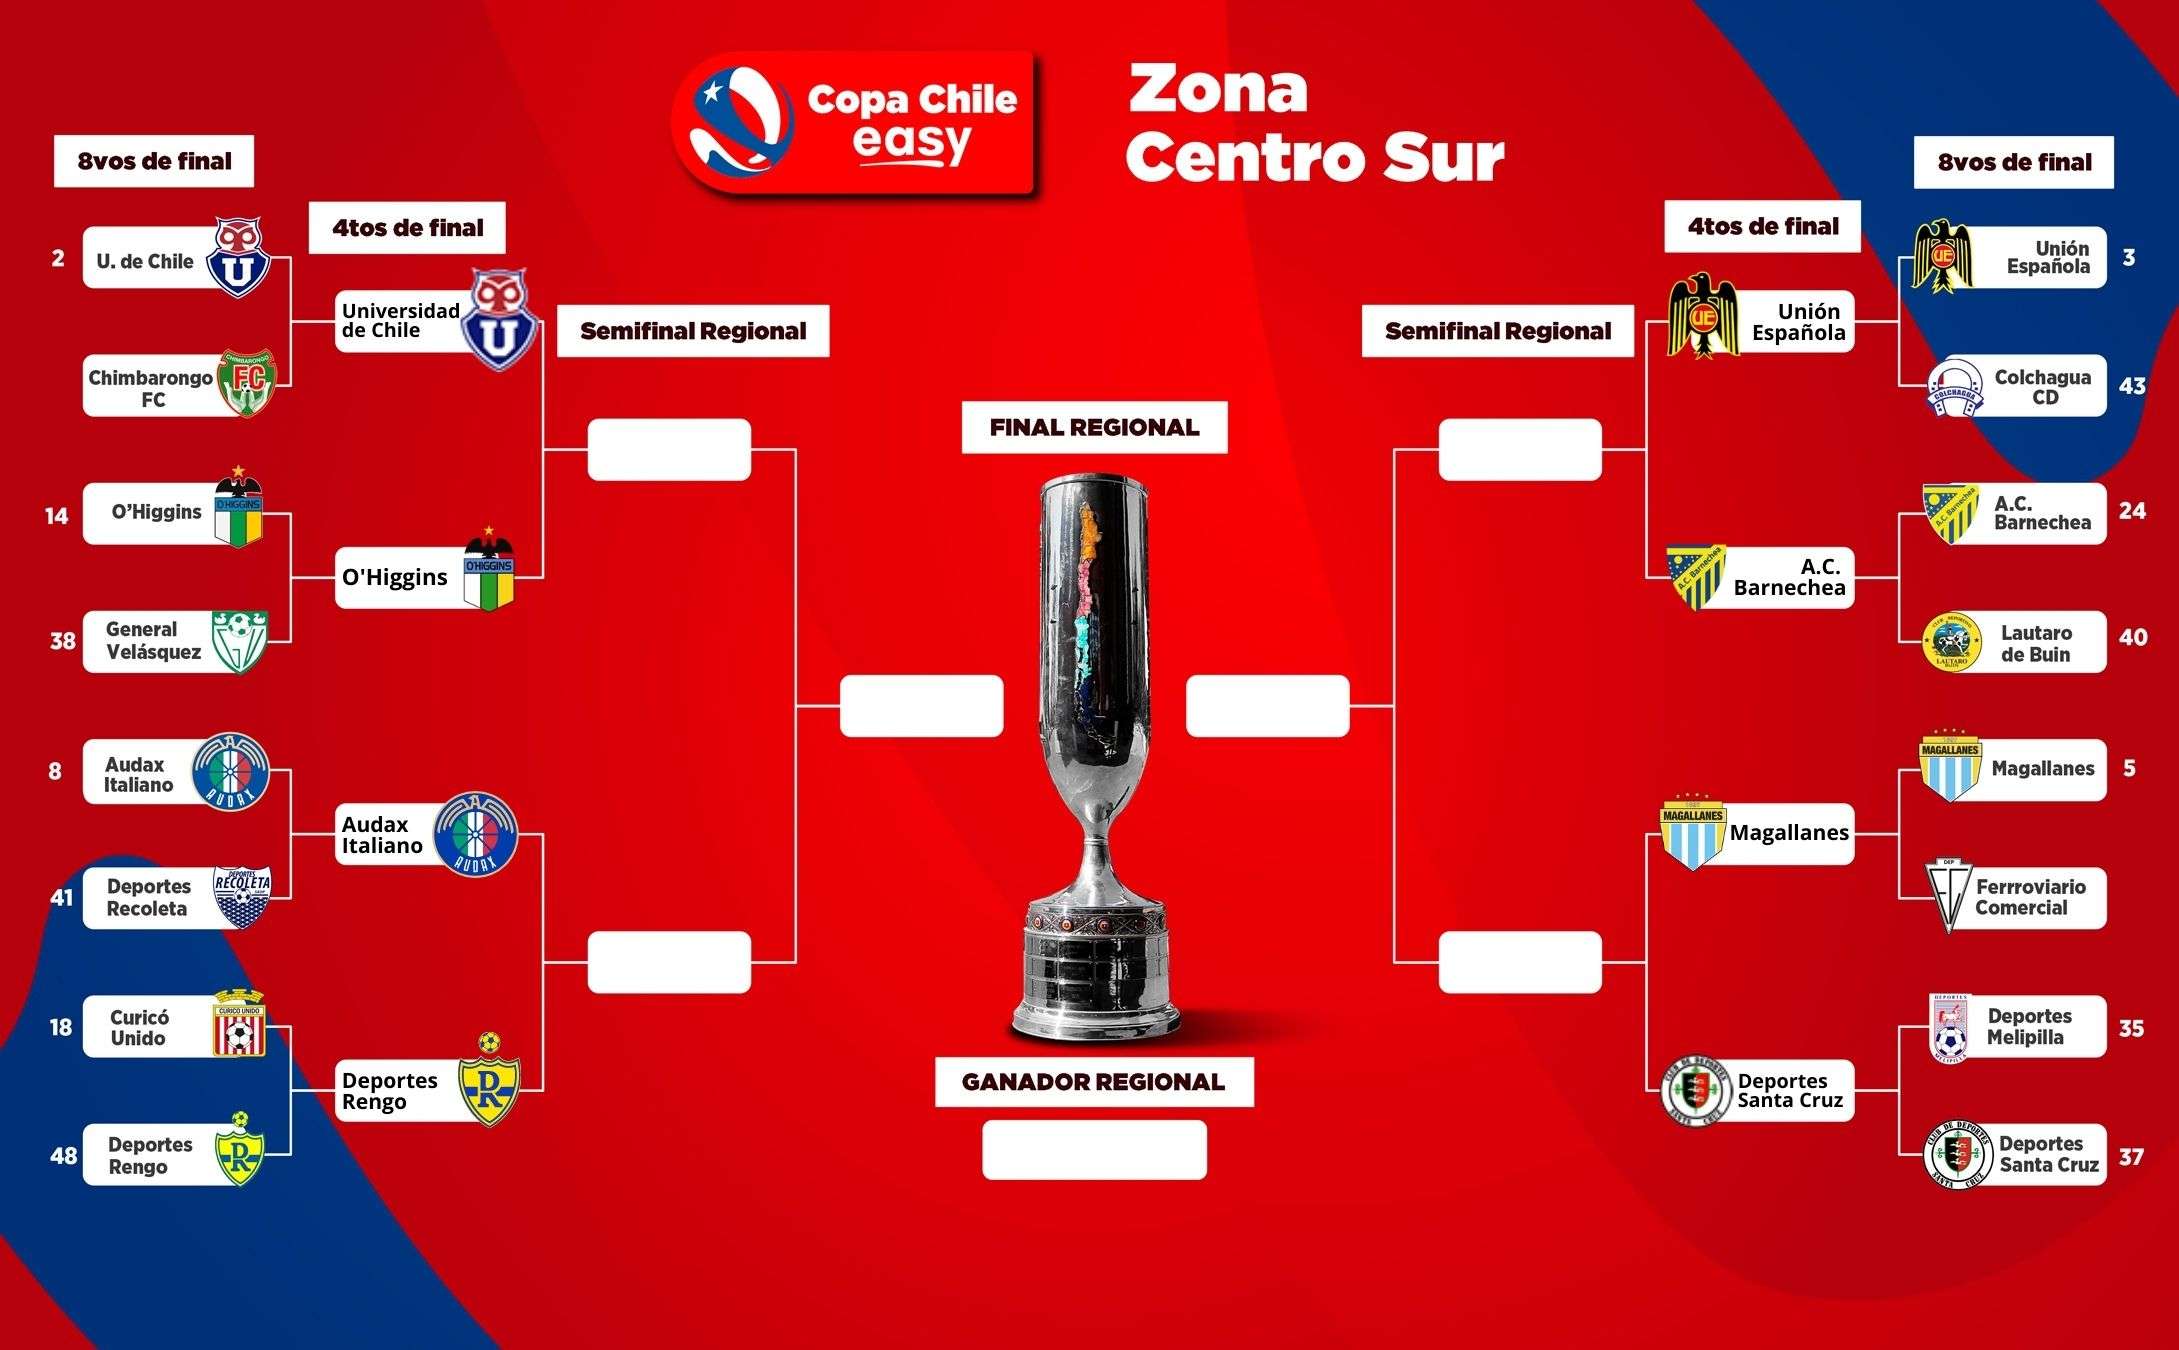 Zona Centro Sur Copa Chile